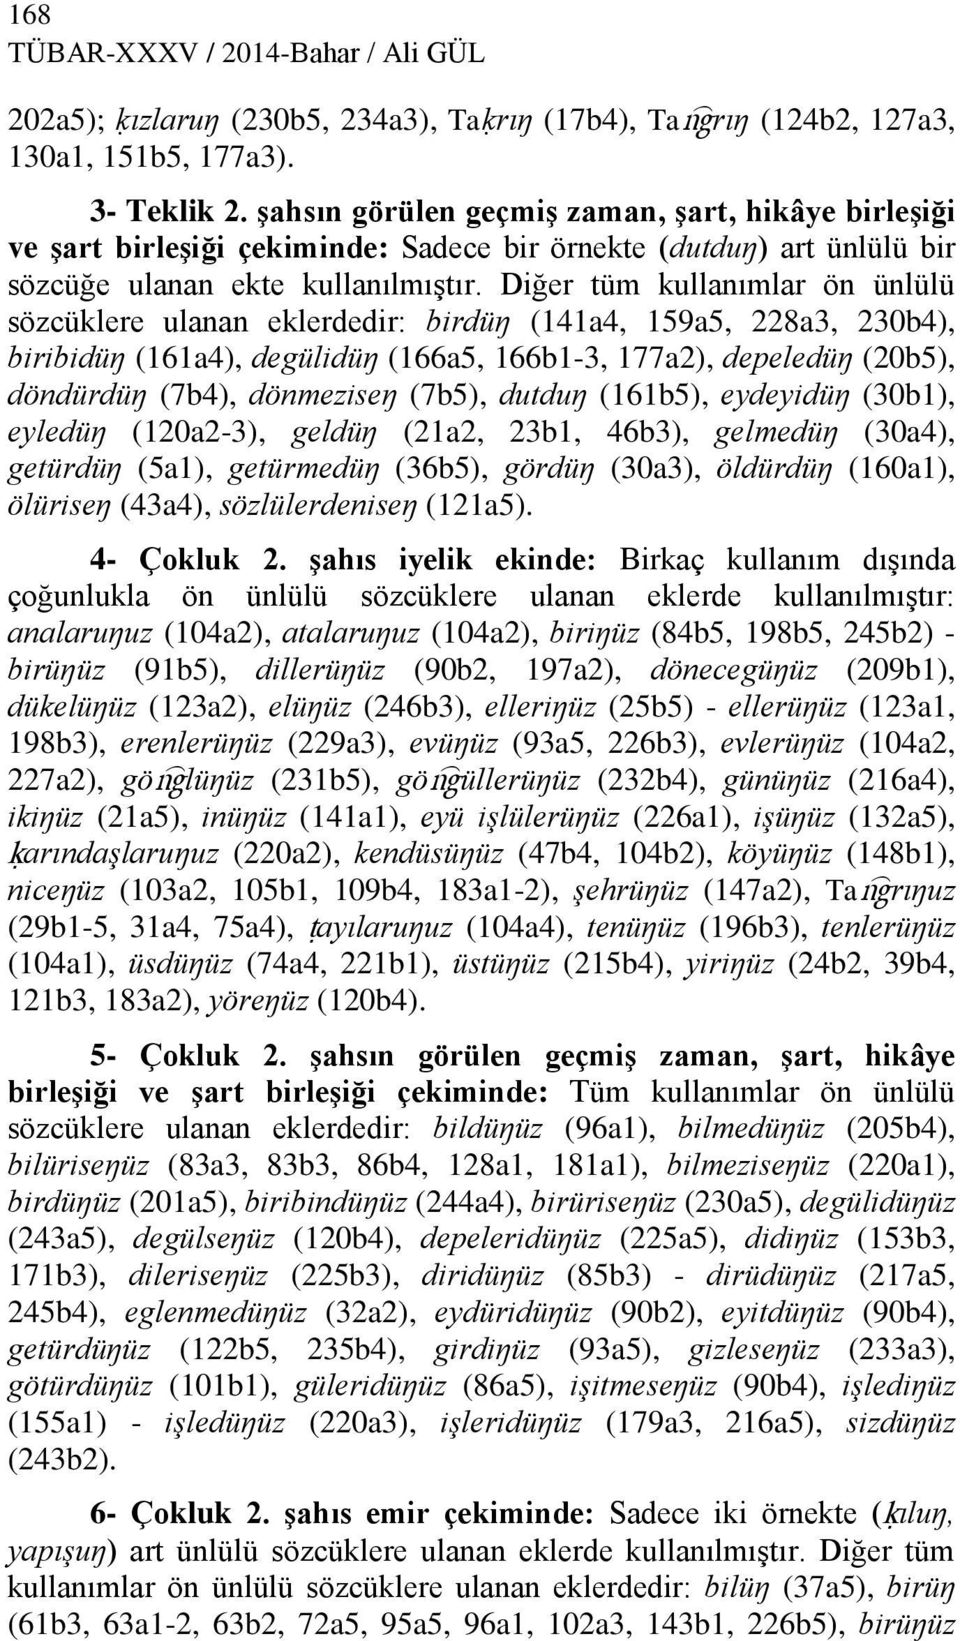 Diğer tüm kullanımlar ön ünlülü sözcüklere ulanan eklerdedir: birdüŋ (141a4, 159a5, 228a3, 230b4), biribidüŋ (161a4), degülidüŋ (166a5, 166b1-3, 177a2), depeledüŋ (20b5), döndürdüŋ (7b4), dönmeziseŋ